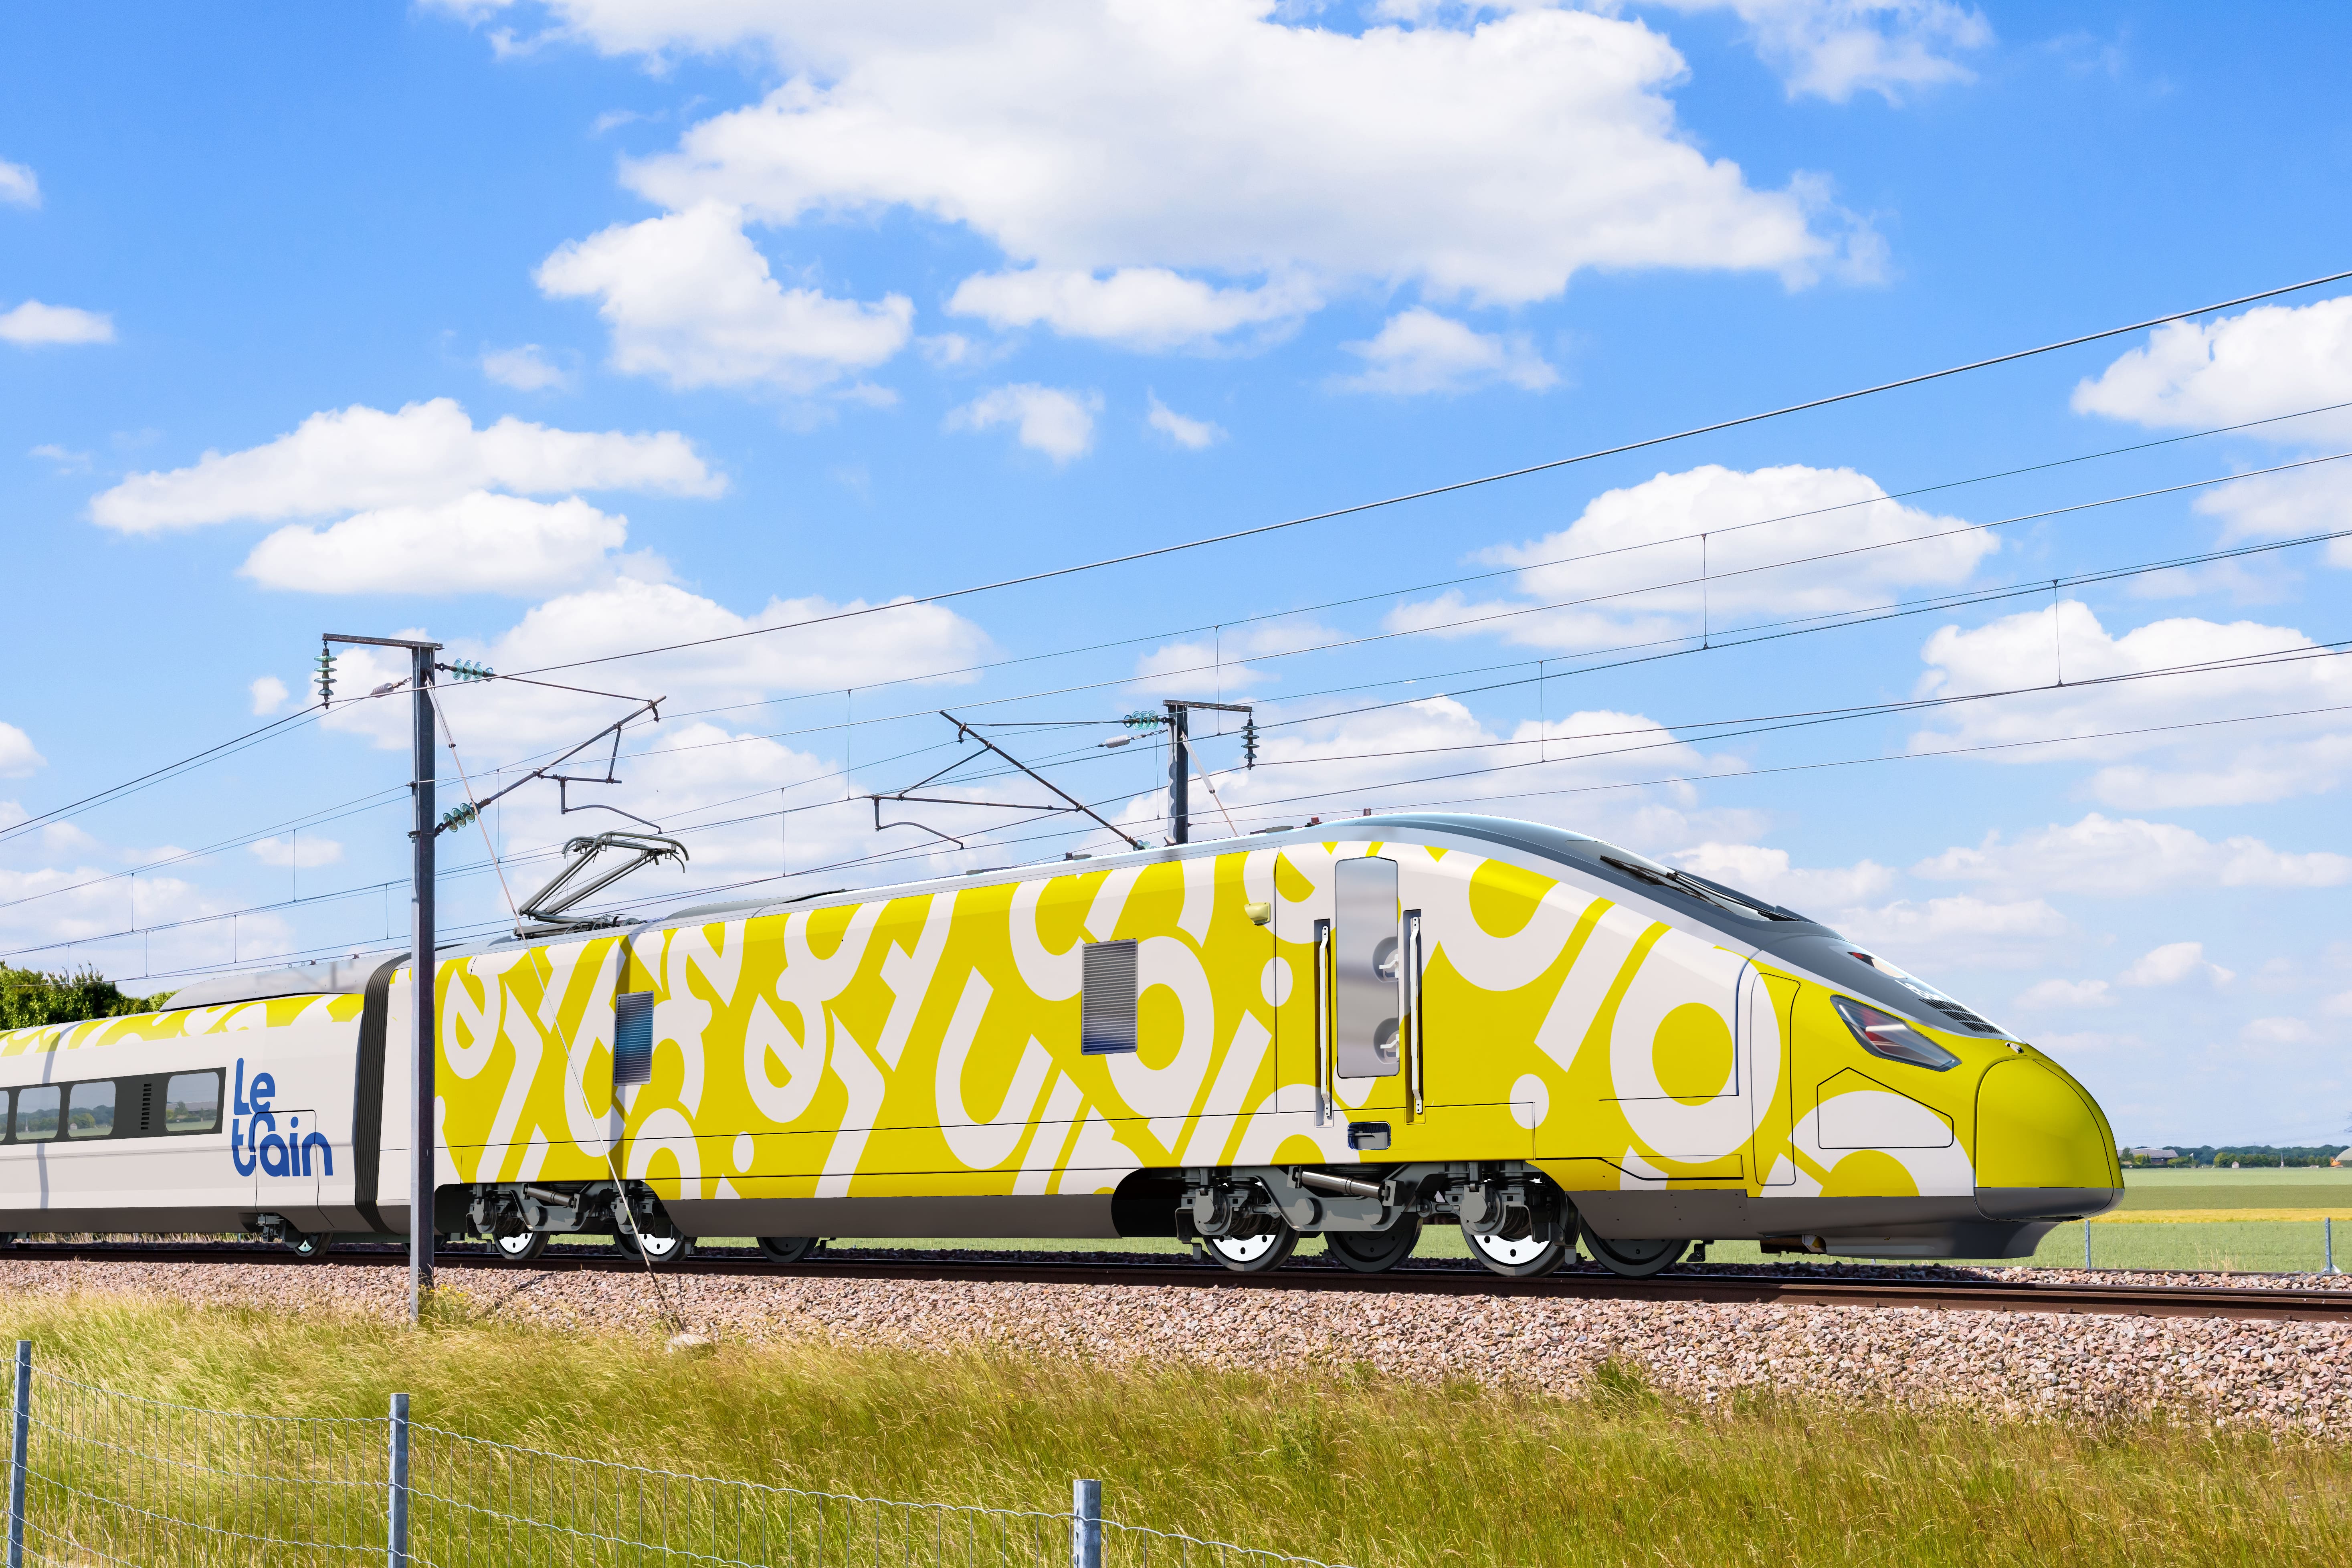 Comment Le Train veut concurrencer la SNCF dans le Grand Ouest